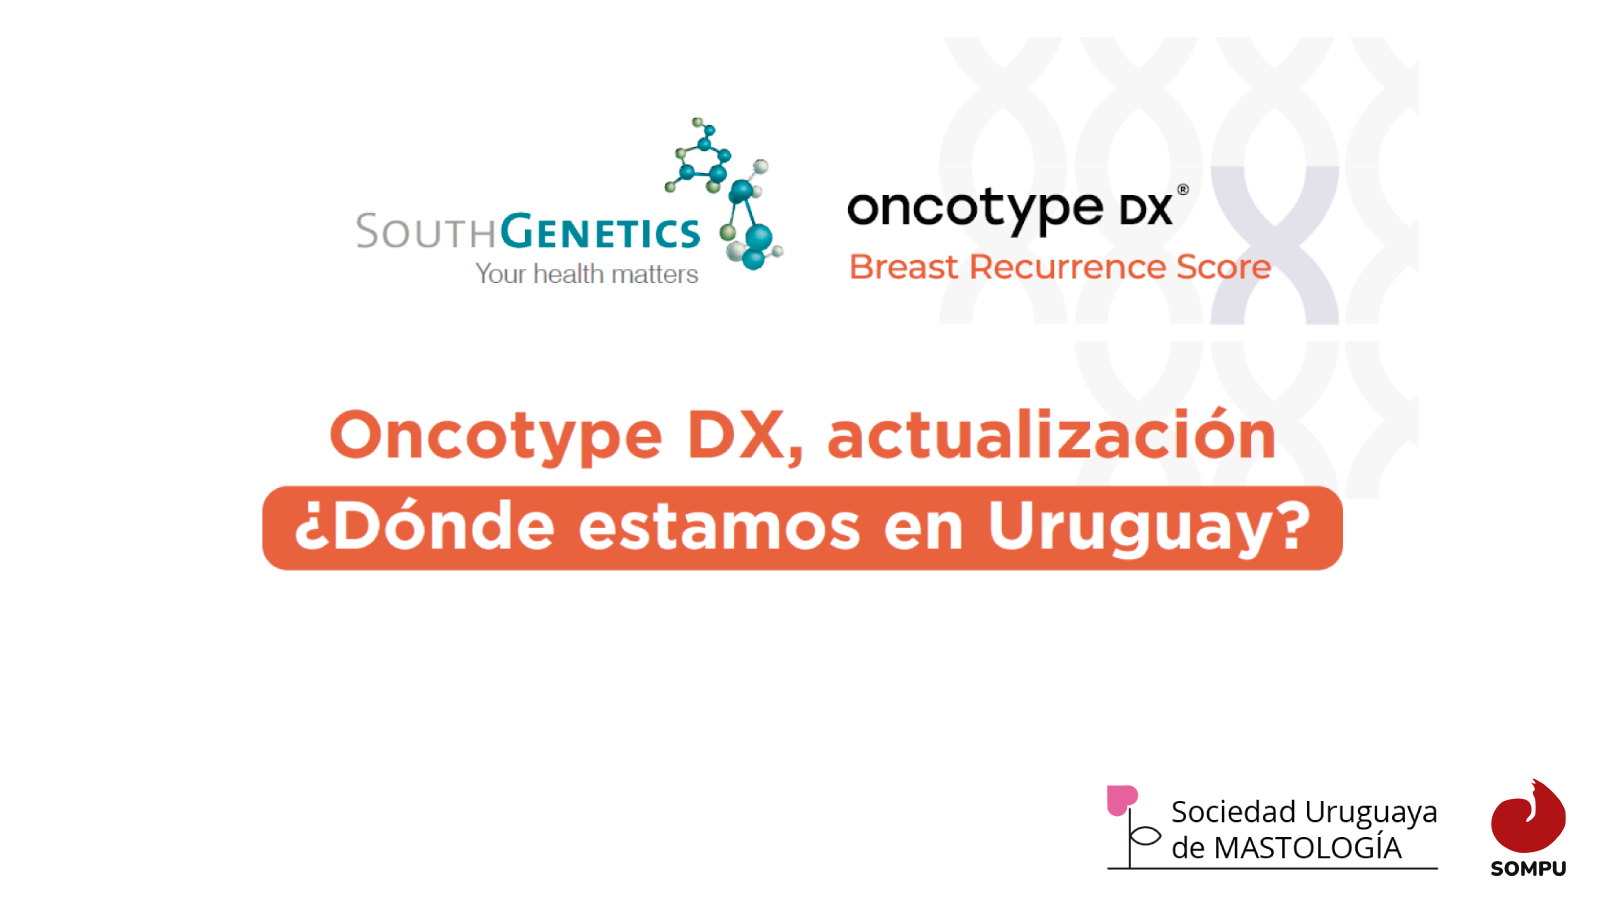 Oncotype DX, Actualización: ¿Dónde estamos en Uruguay?